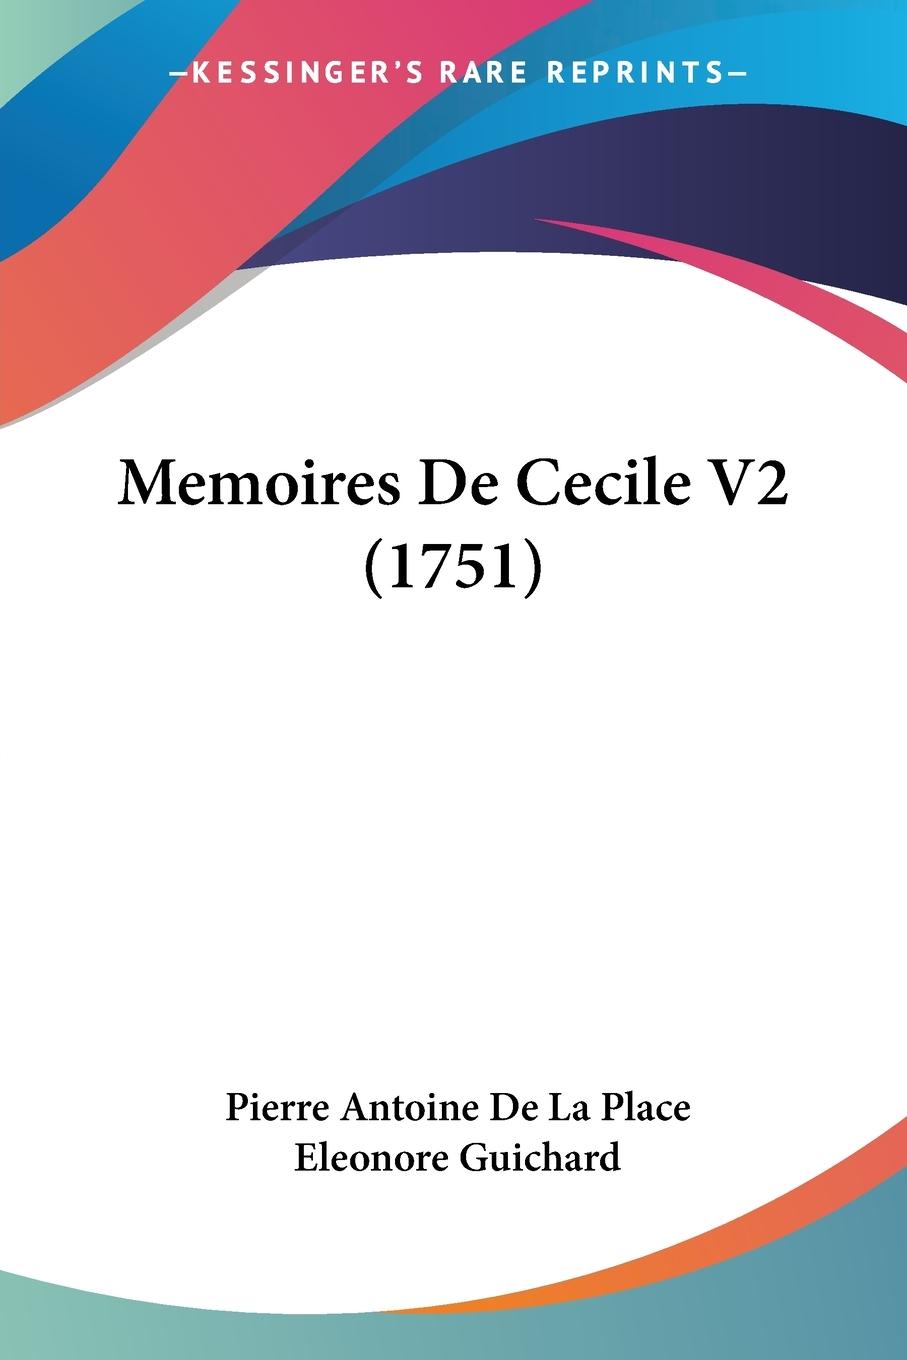 Memoires De Cecile V2 (1751) - Place, Pierre Antoine De La Guichard, Eleonore